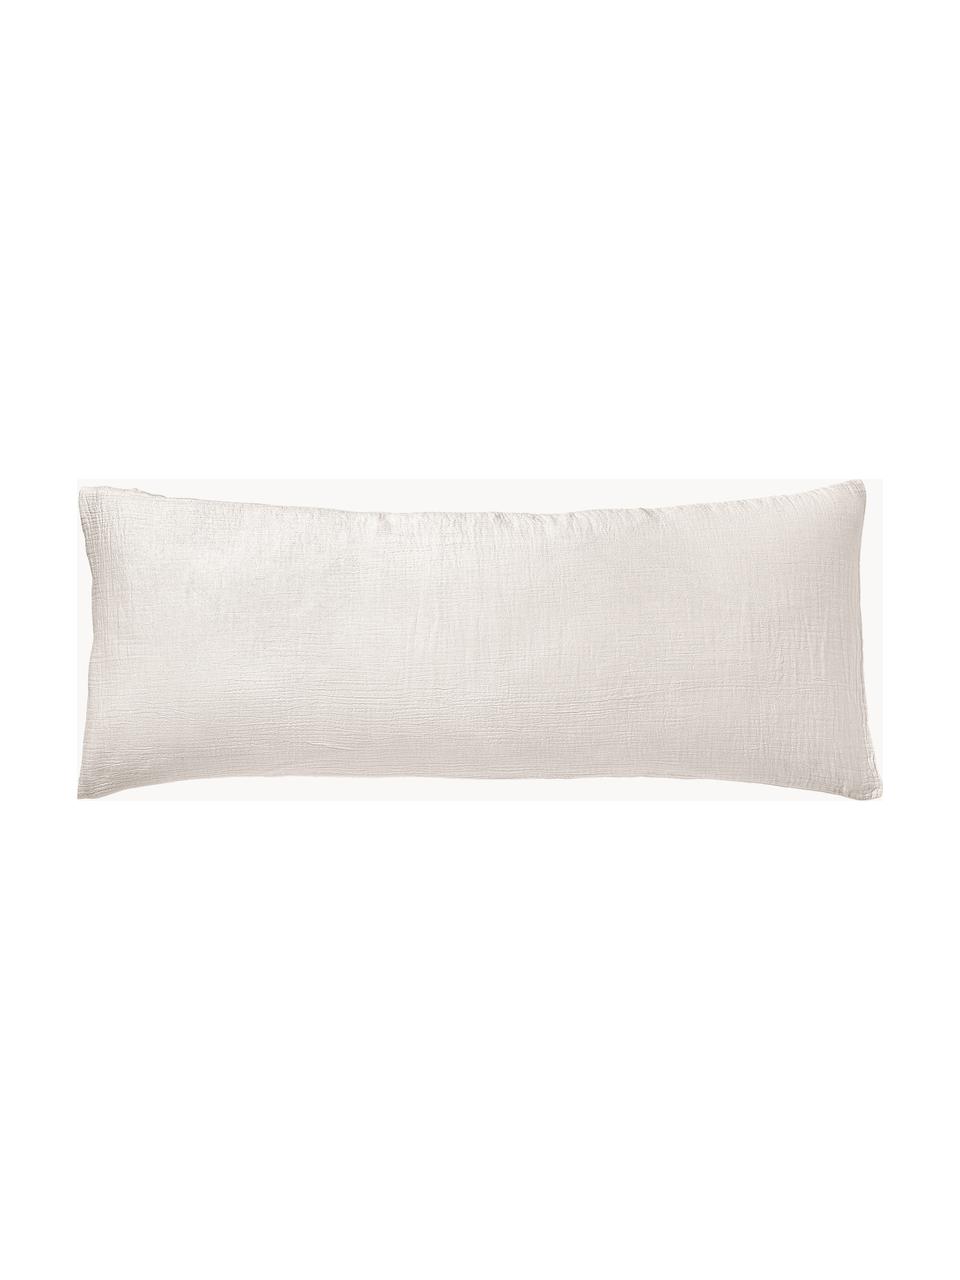 Funda de almohada de muselina Odile, Beige claro, An 45 x L 110 cm